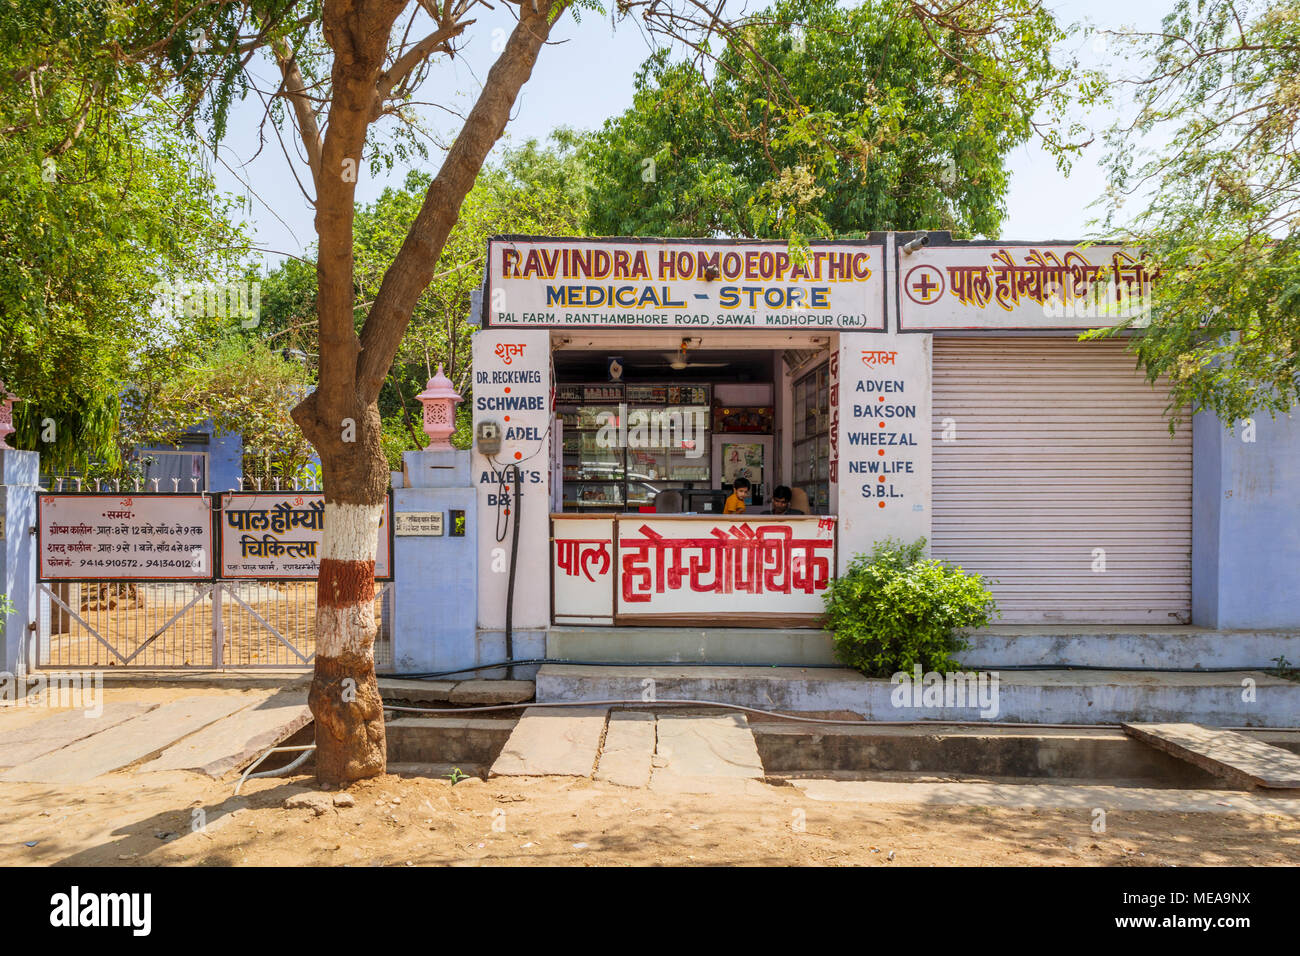 Apotheke am Straßenrand (homöopathische medizinische Store) in Sawai Madhopur, Rajasthan, Nordindien in der Nähe von Ranthambore Nationalpark Stockfoto